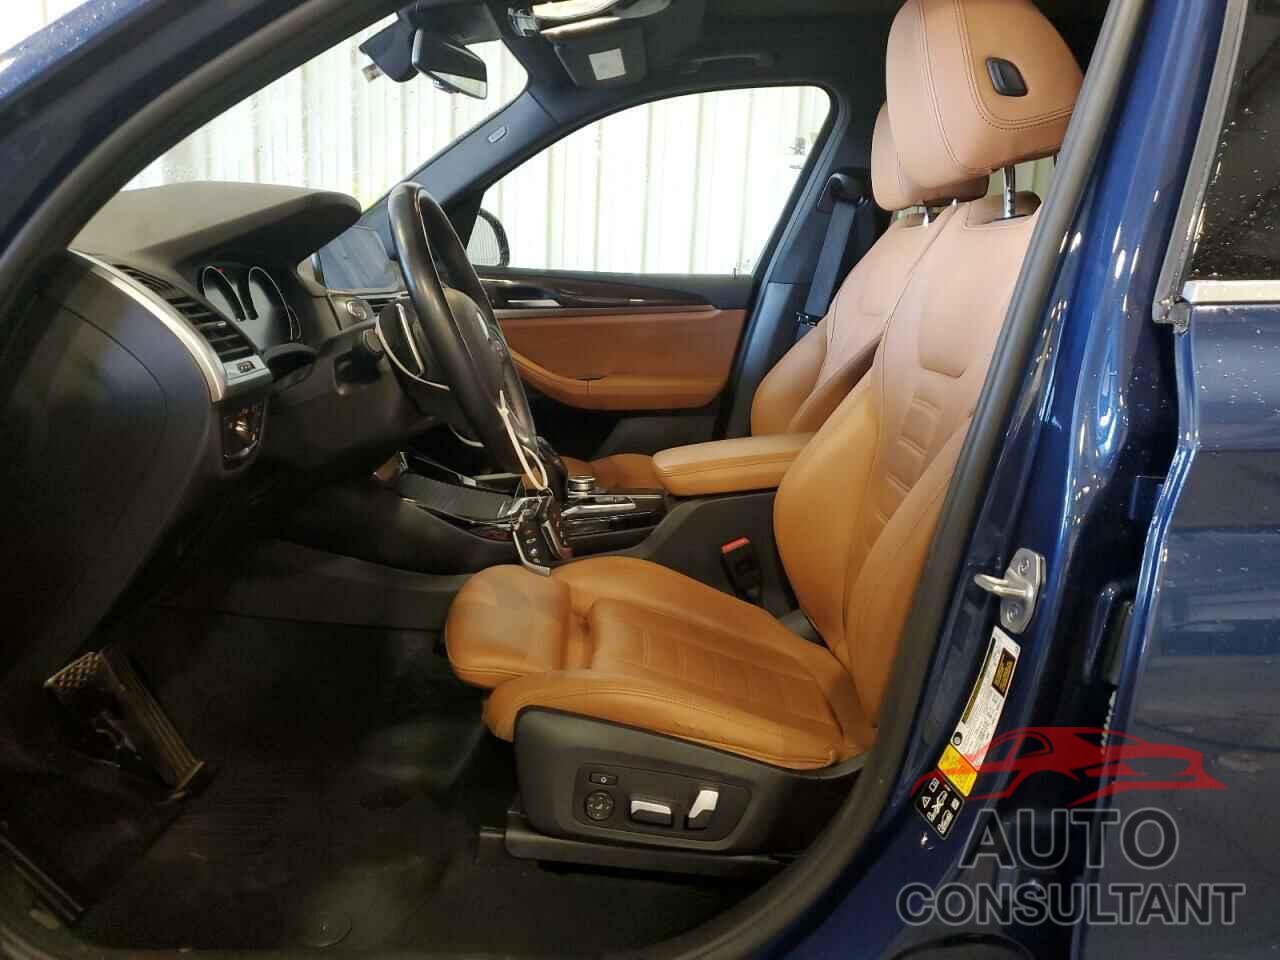 BMW X3 2021 - 5UXTY5C06M9D75585